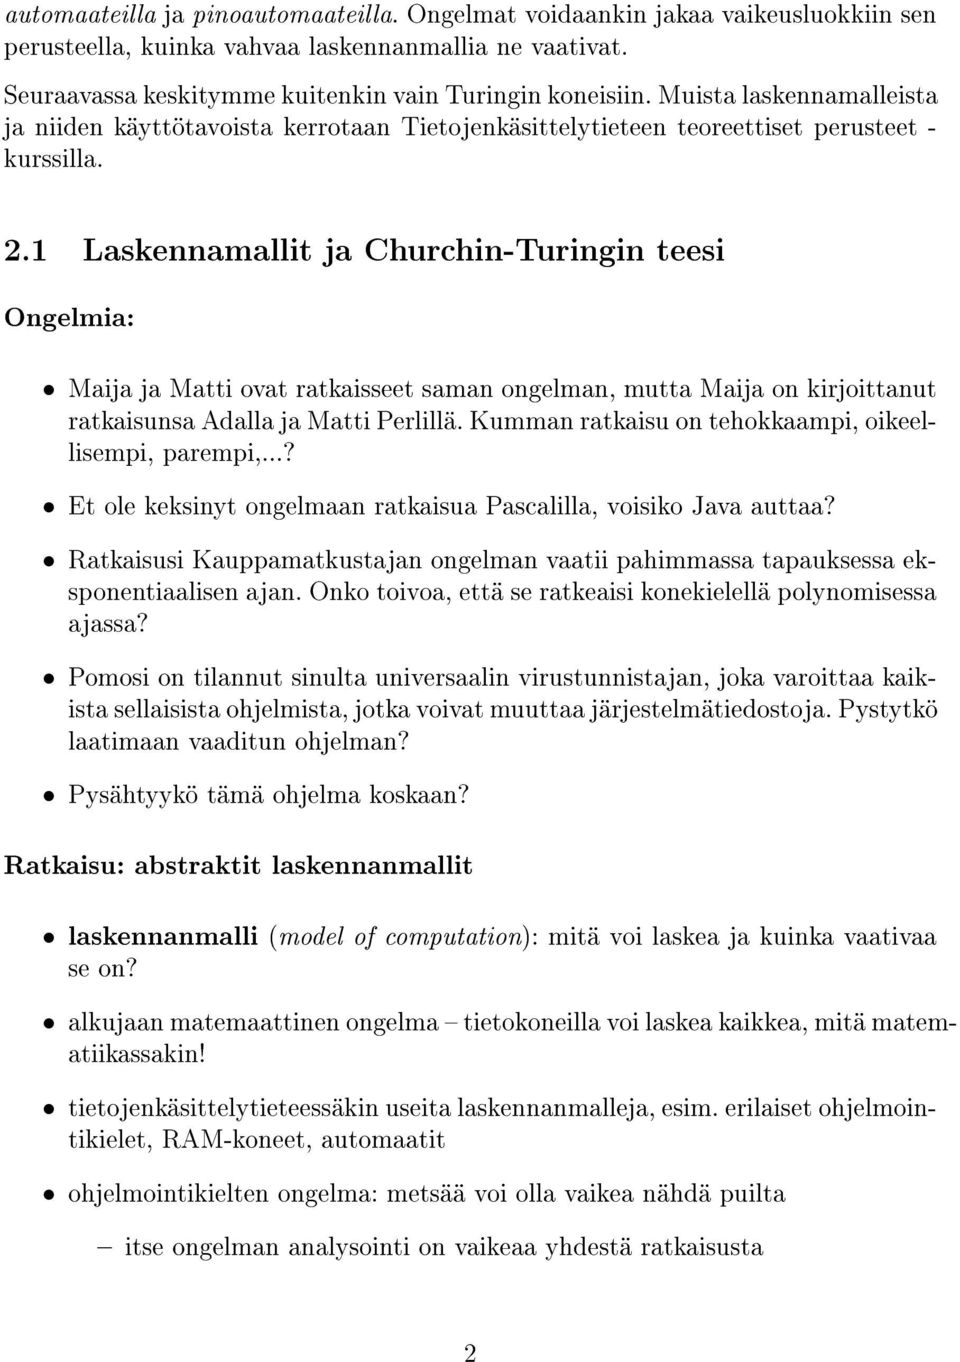 1 Laskennamallit ja Churchin-Turingin teesi Ongelmia: Maija ja Matti ovat ratkaisseet saman ongelman, mutta Maija on kirjoittanut ratkaisunsa Adalla ja Matti Perlillä.